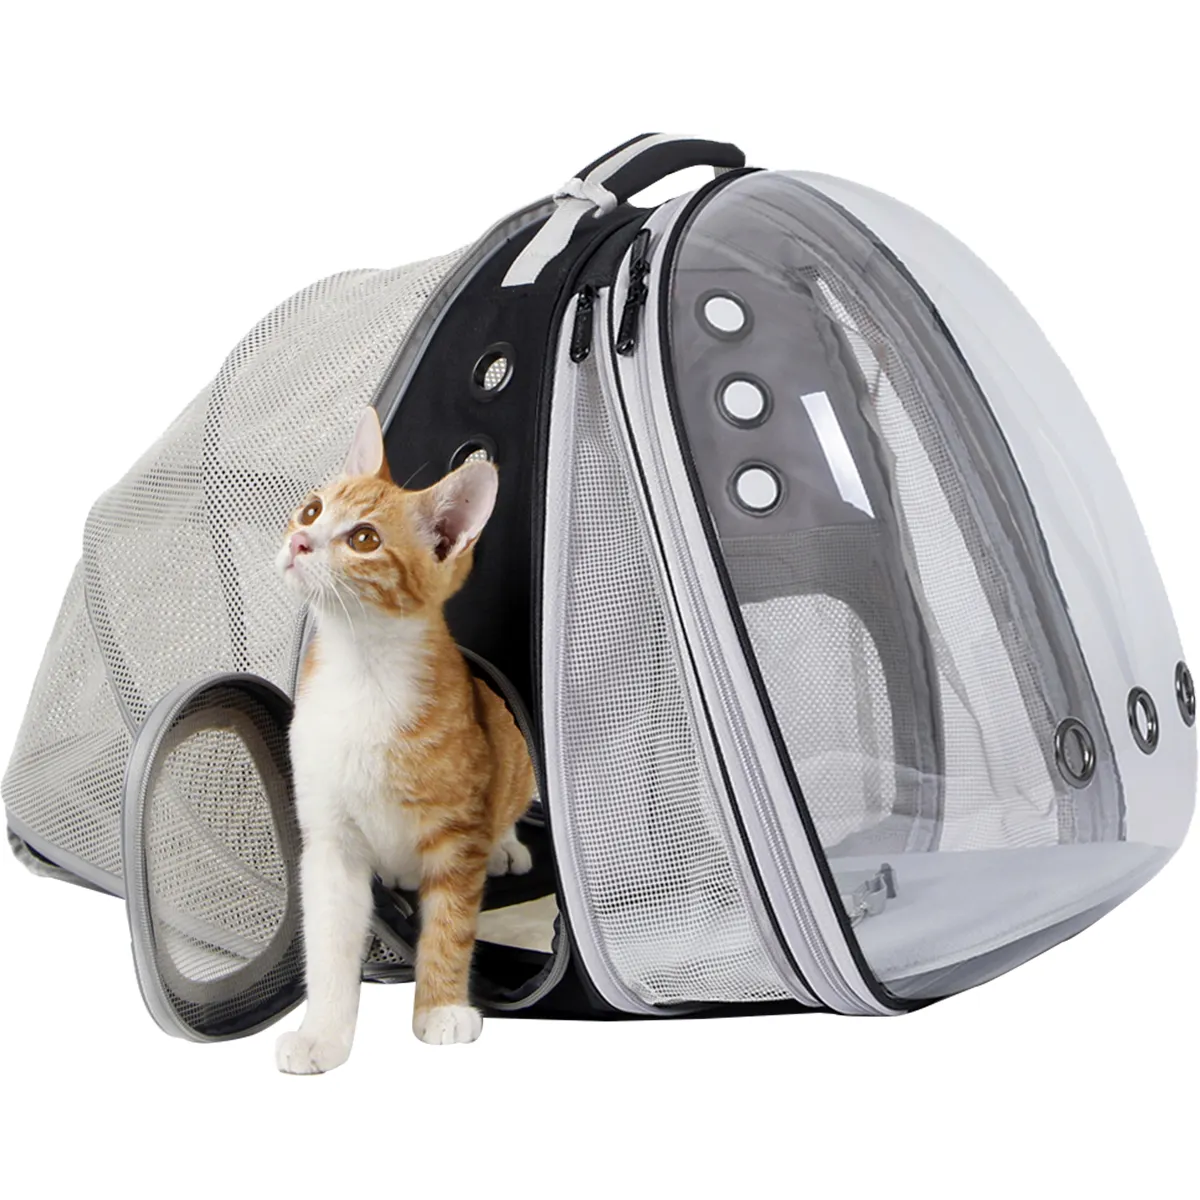 신제품 확장 가능한 투명 버블 고양이 배낭 캐리어 작은 강아지와 큰 뚱뚱한 고양이 수의학 수송 애완 동물 책 가방